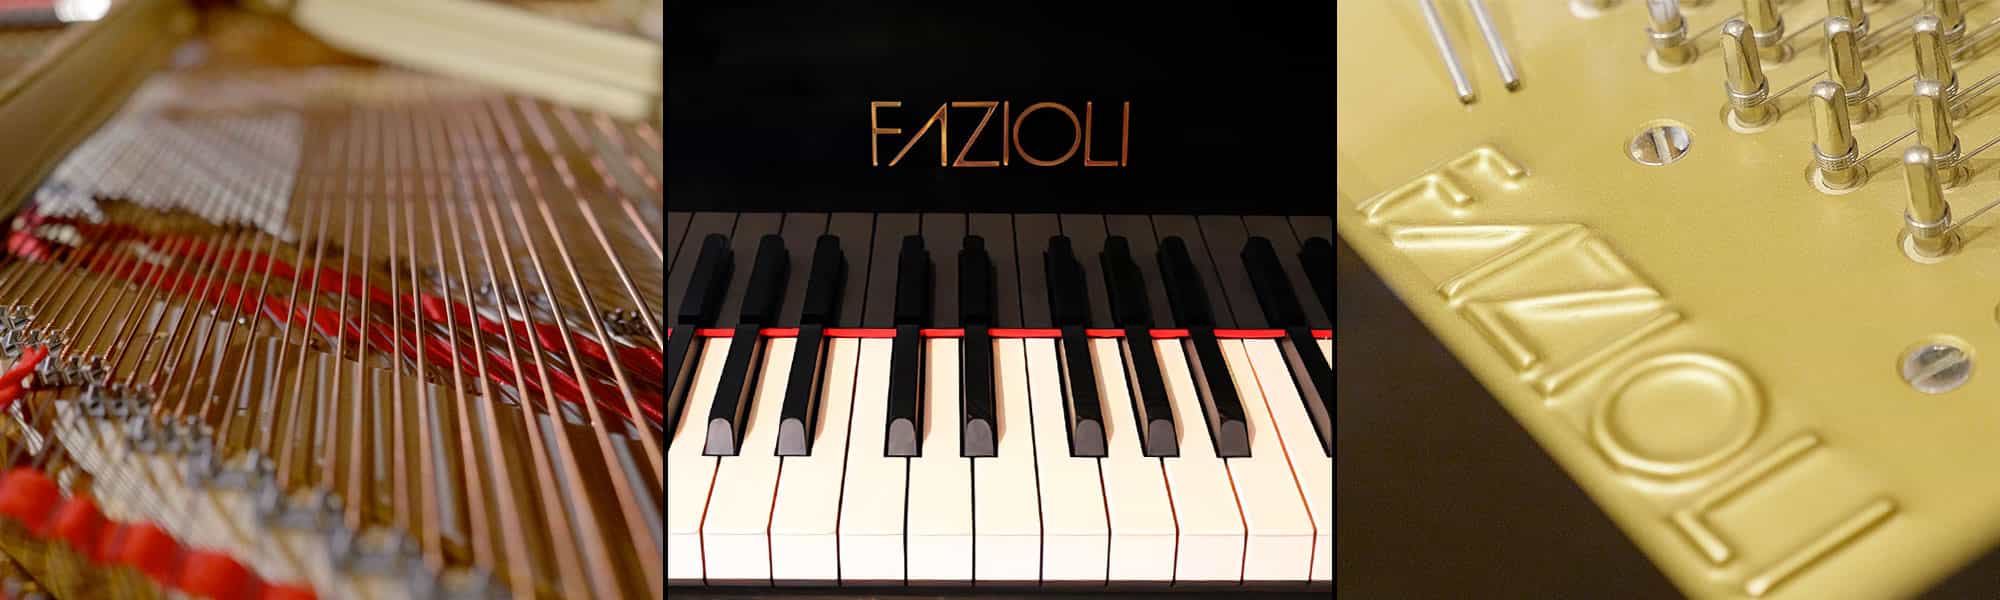 FAZIOLI concert grand piano